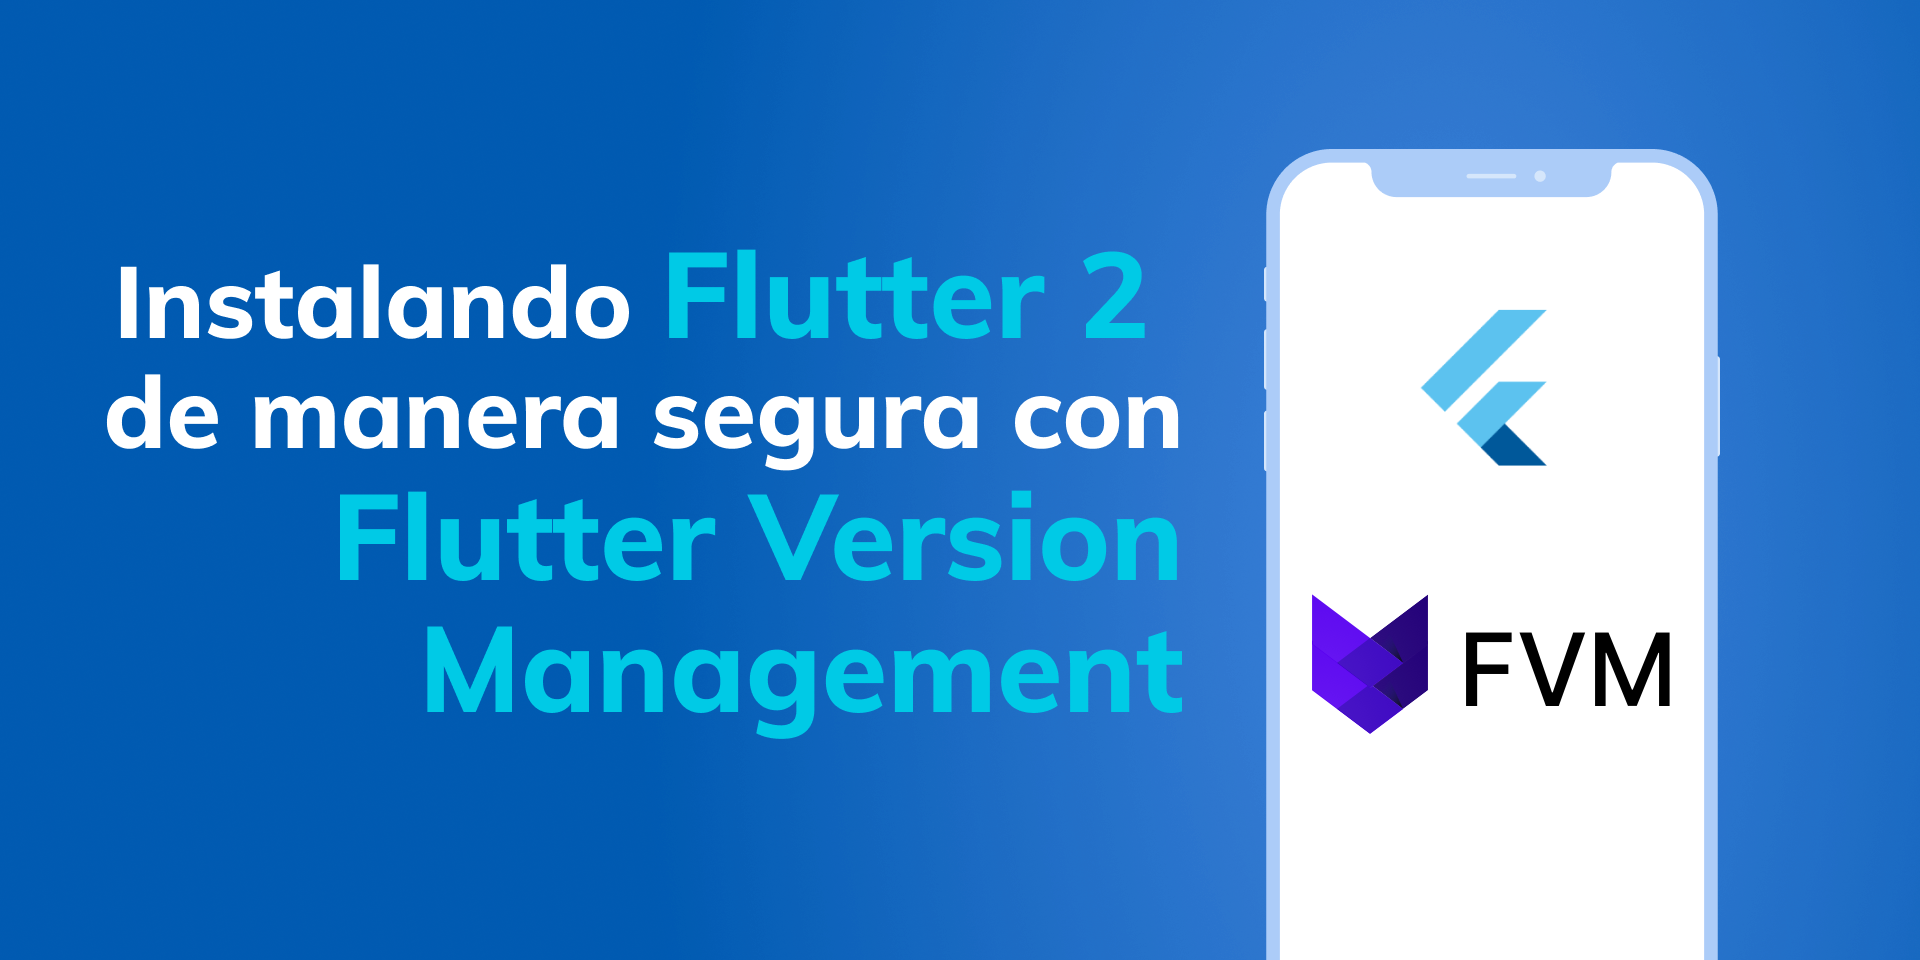 Cartel del artículo instalando Flutter 2 con FVM